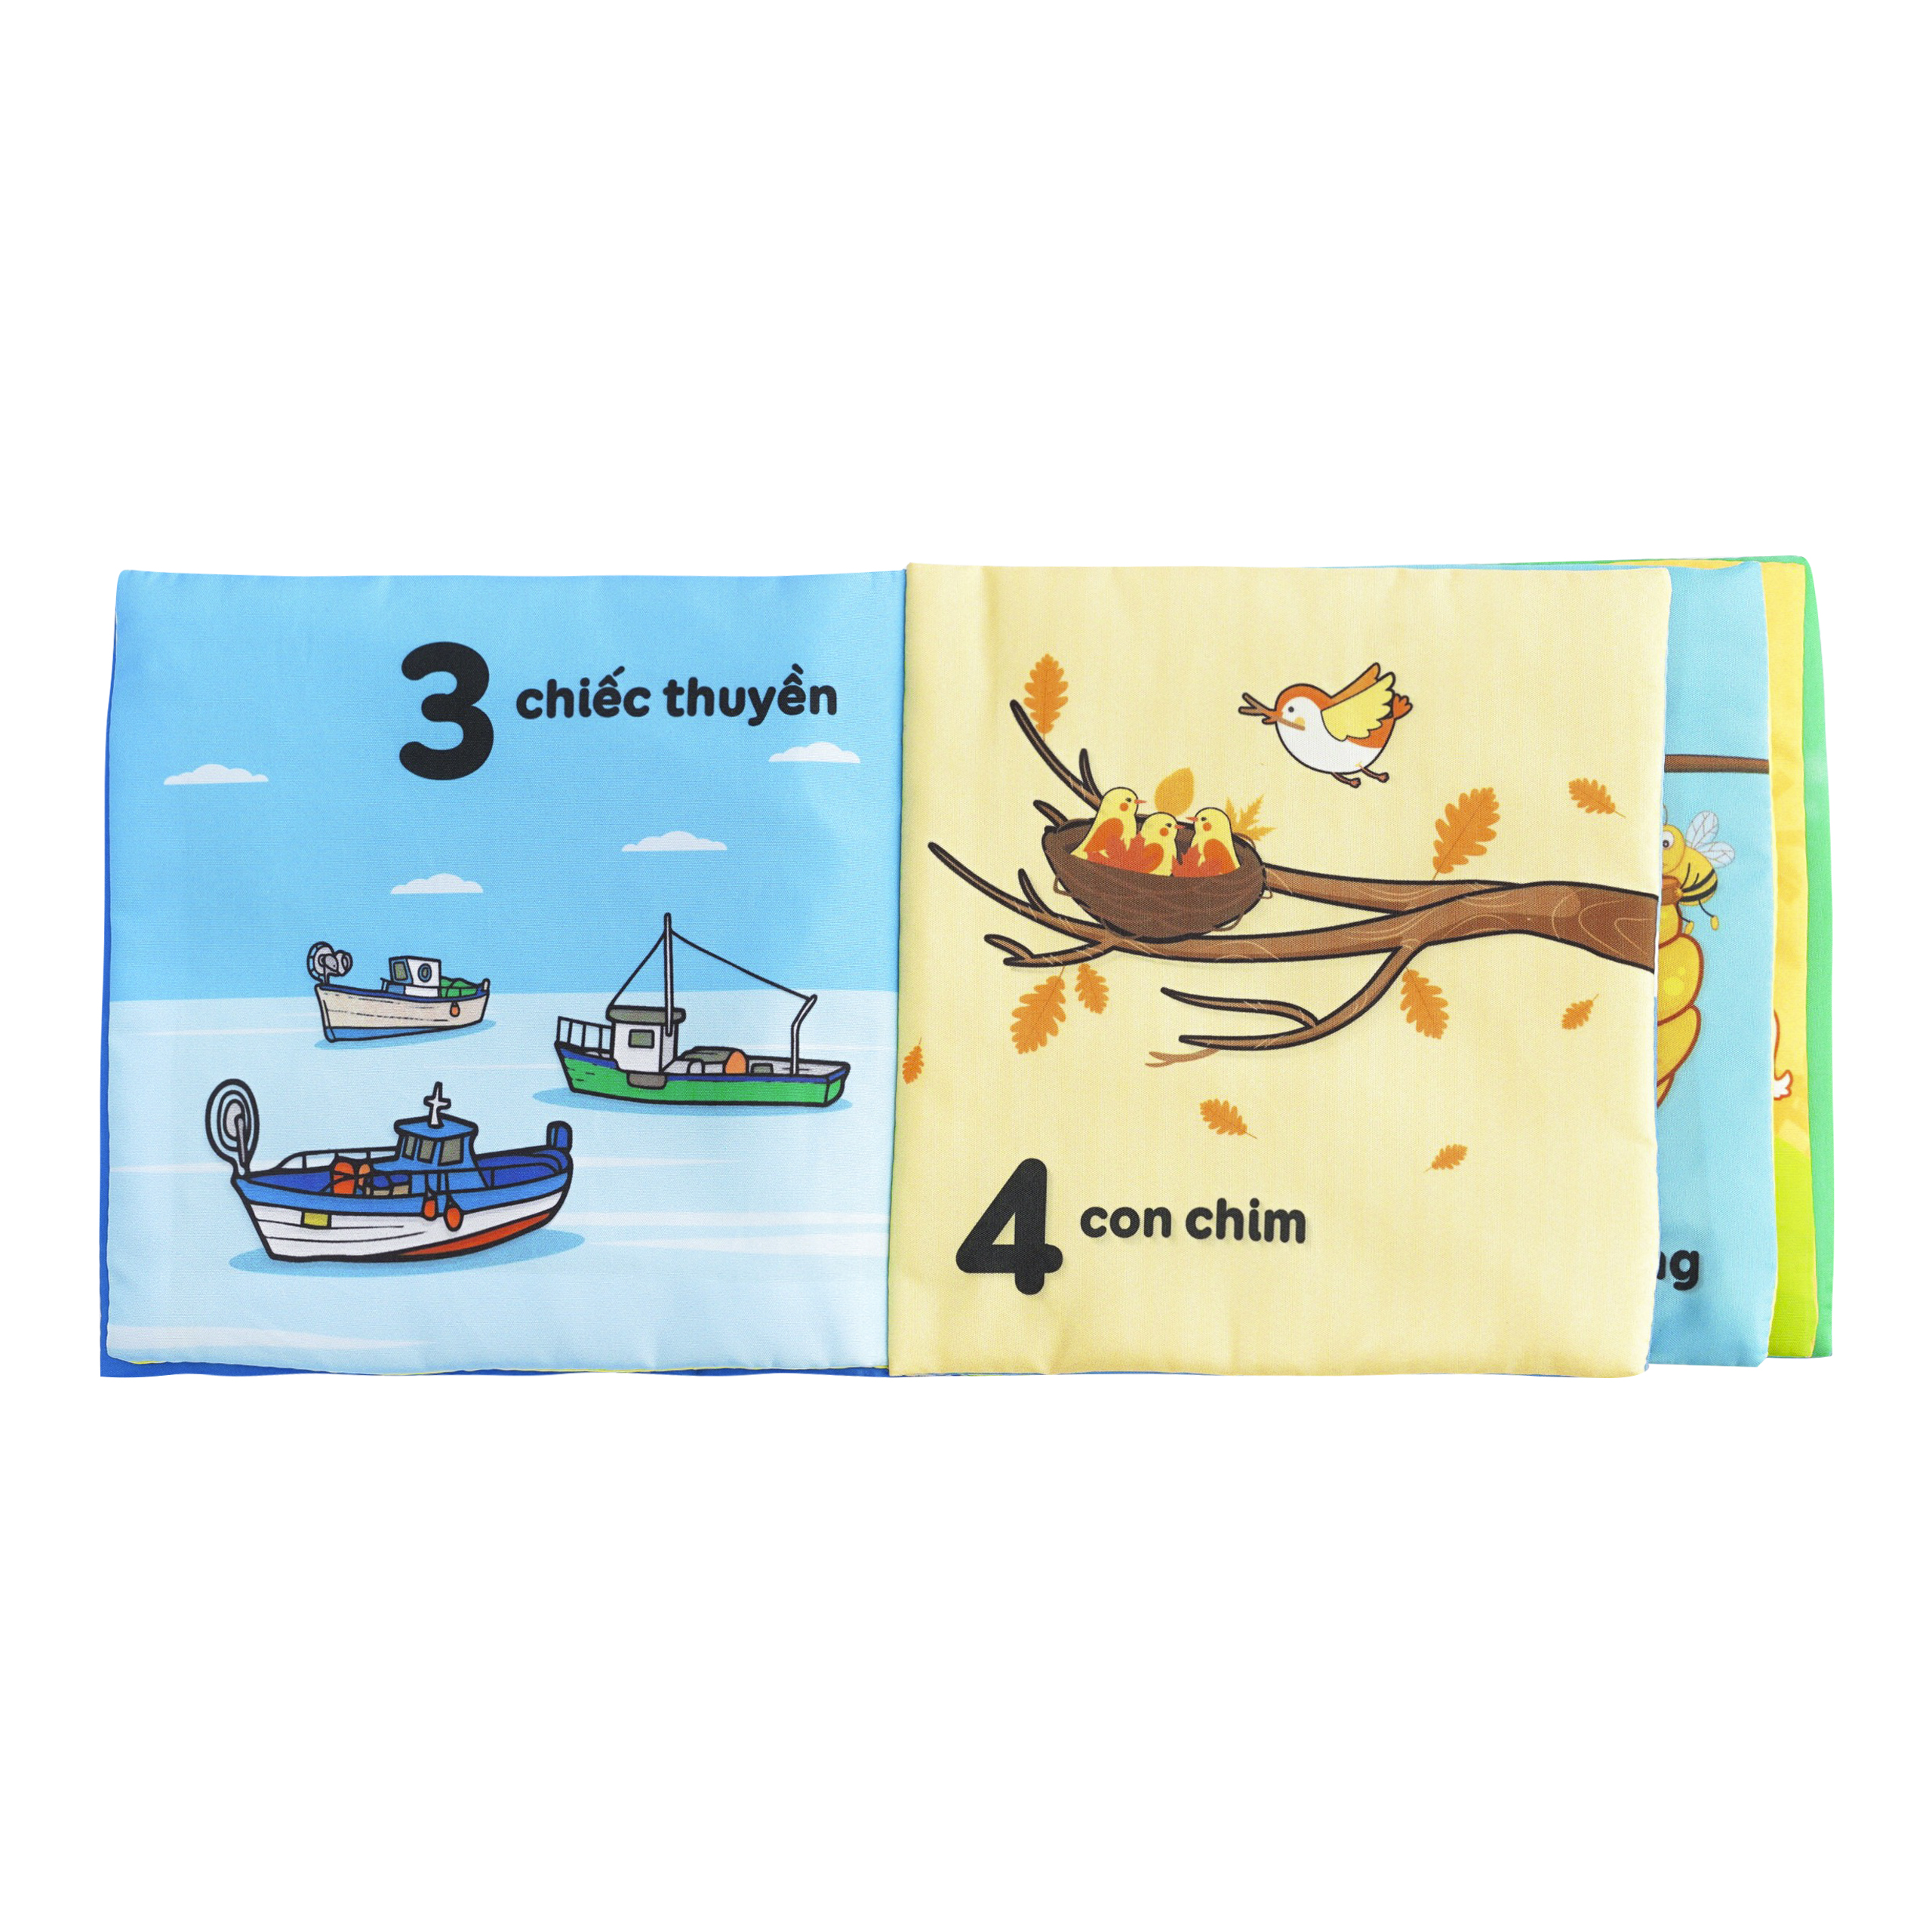 Combo 4 cuốn sách vải Lalala baby (chủ đề Số đếm, Chữ cái, Hình khối, Màu sắc), cung cấp kiến thức cơ bản đầu đời cho bé, Sách tương tác sột soạt, Màu sắc rõ nét, Dành cho bé từ 0-3 tuổi, CHÍNH HÃNG made in Vietnam